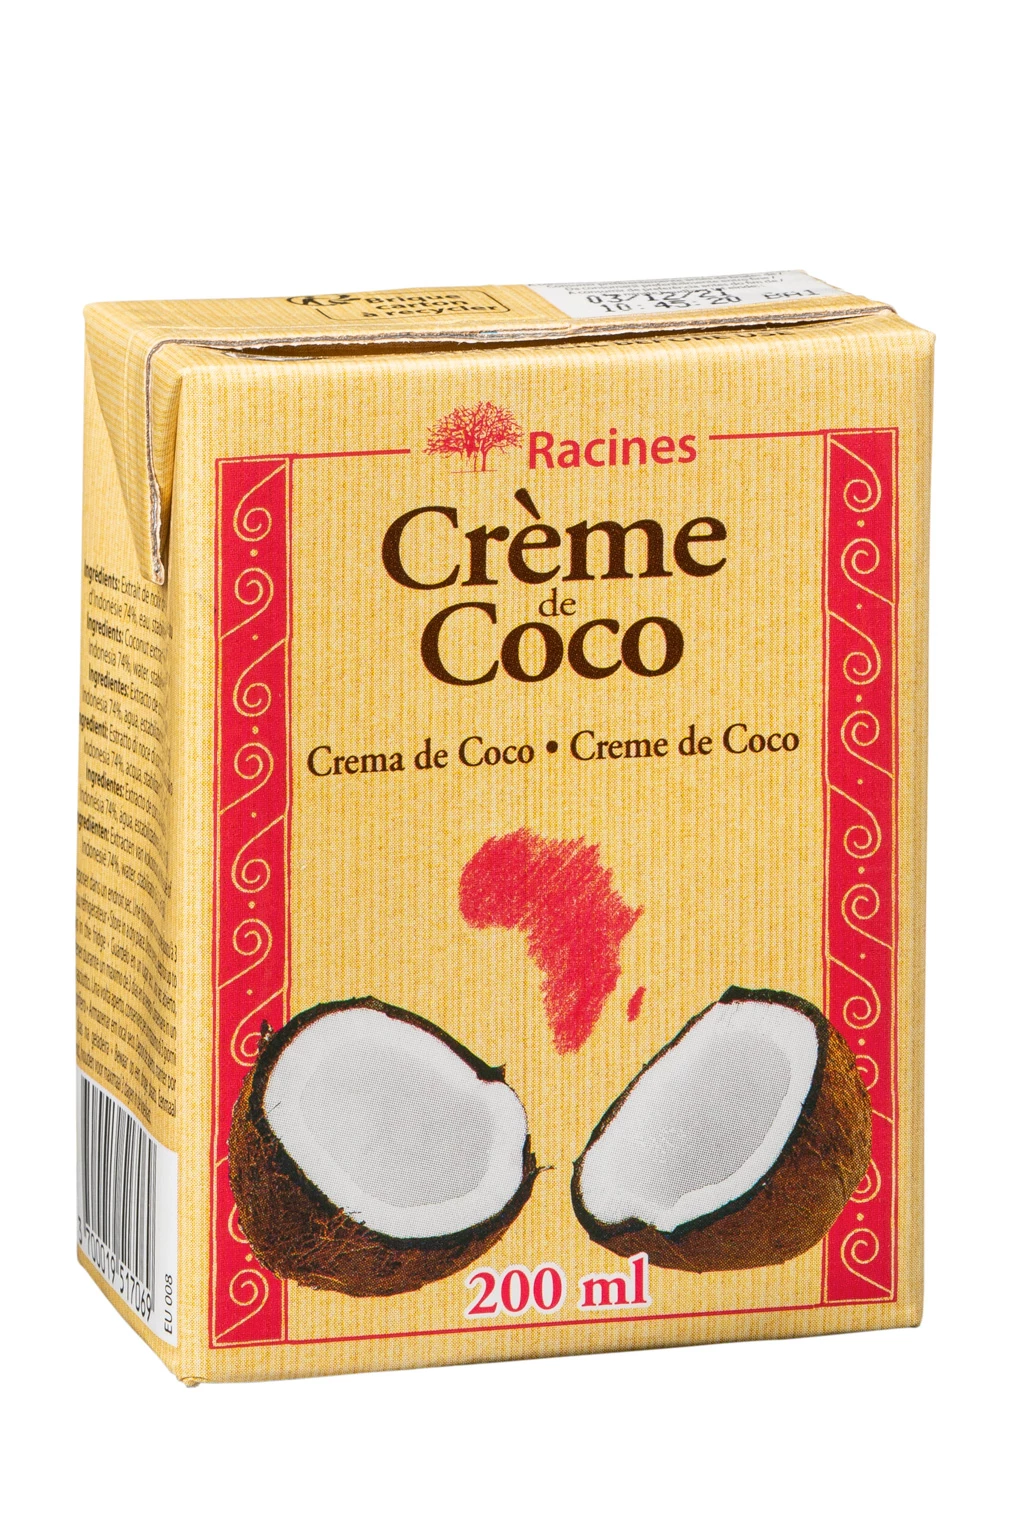 Crème De Coco (24 X 200 Ml) Tetrapack - Racines